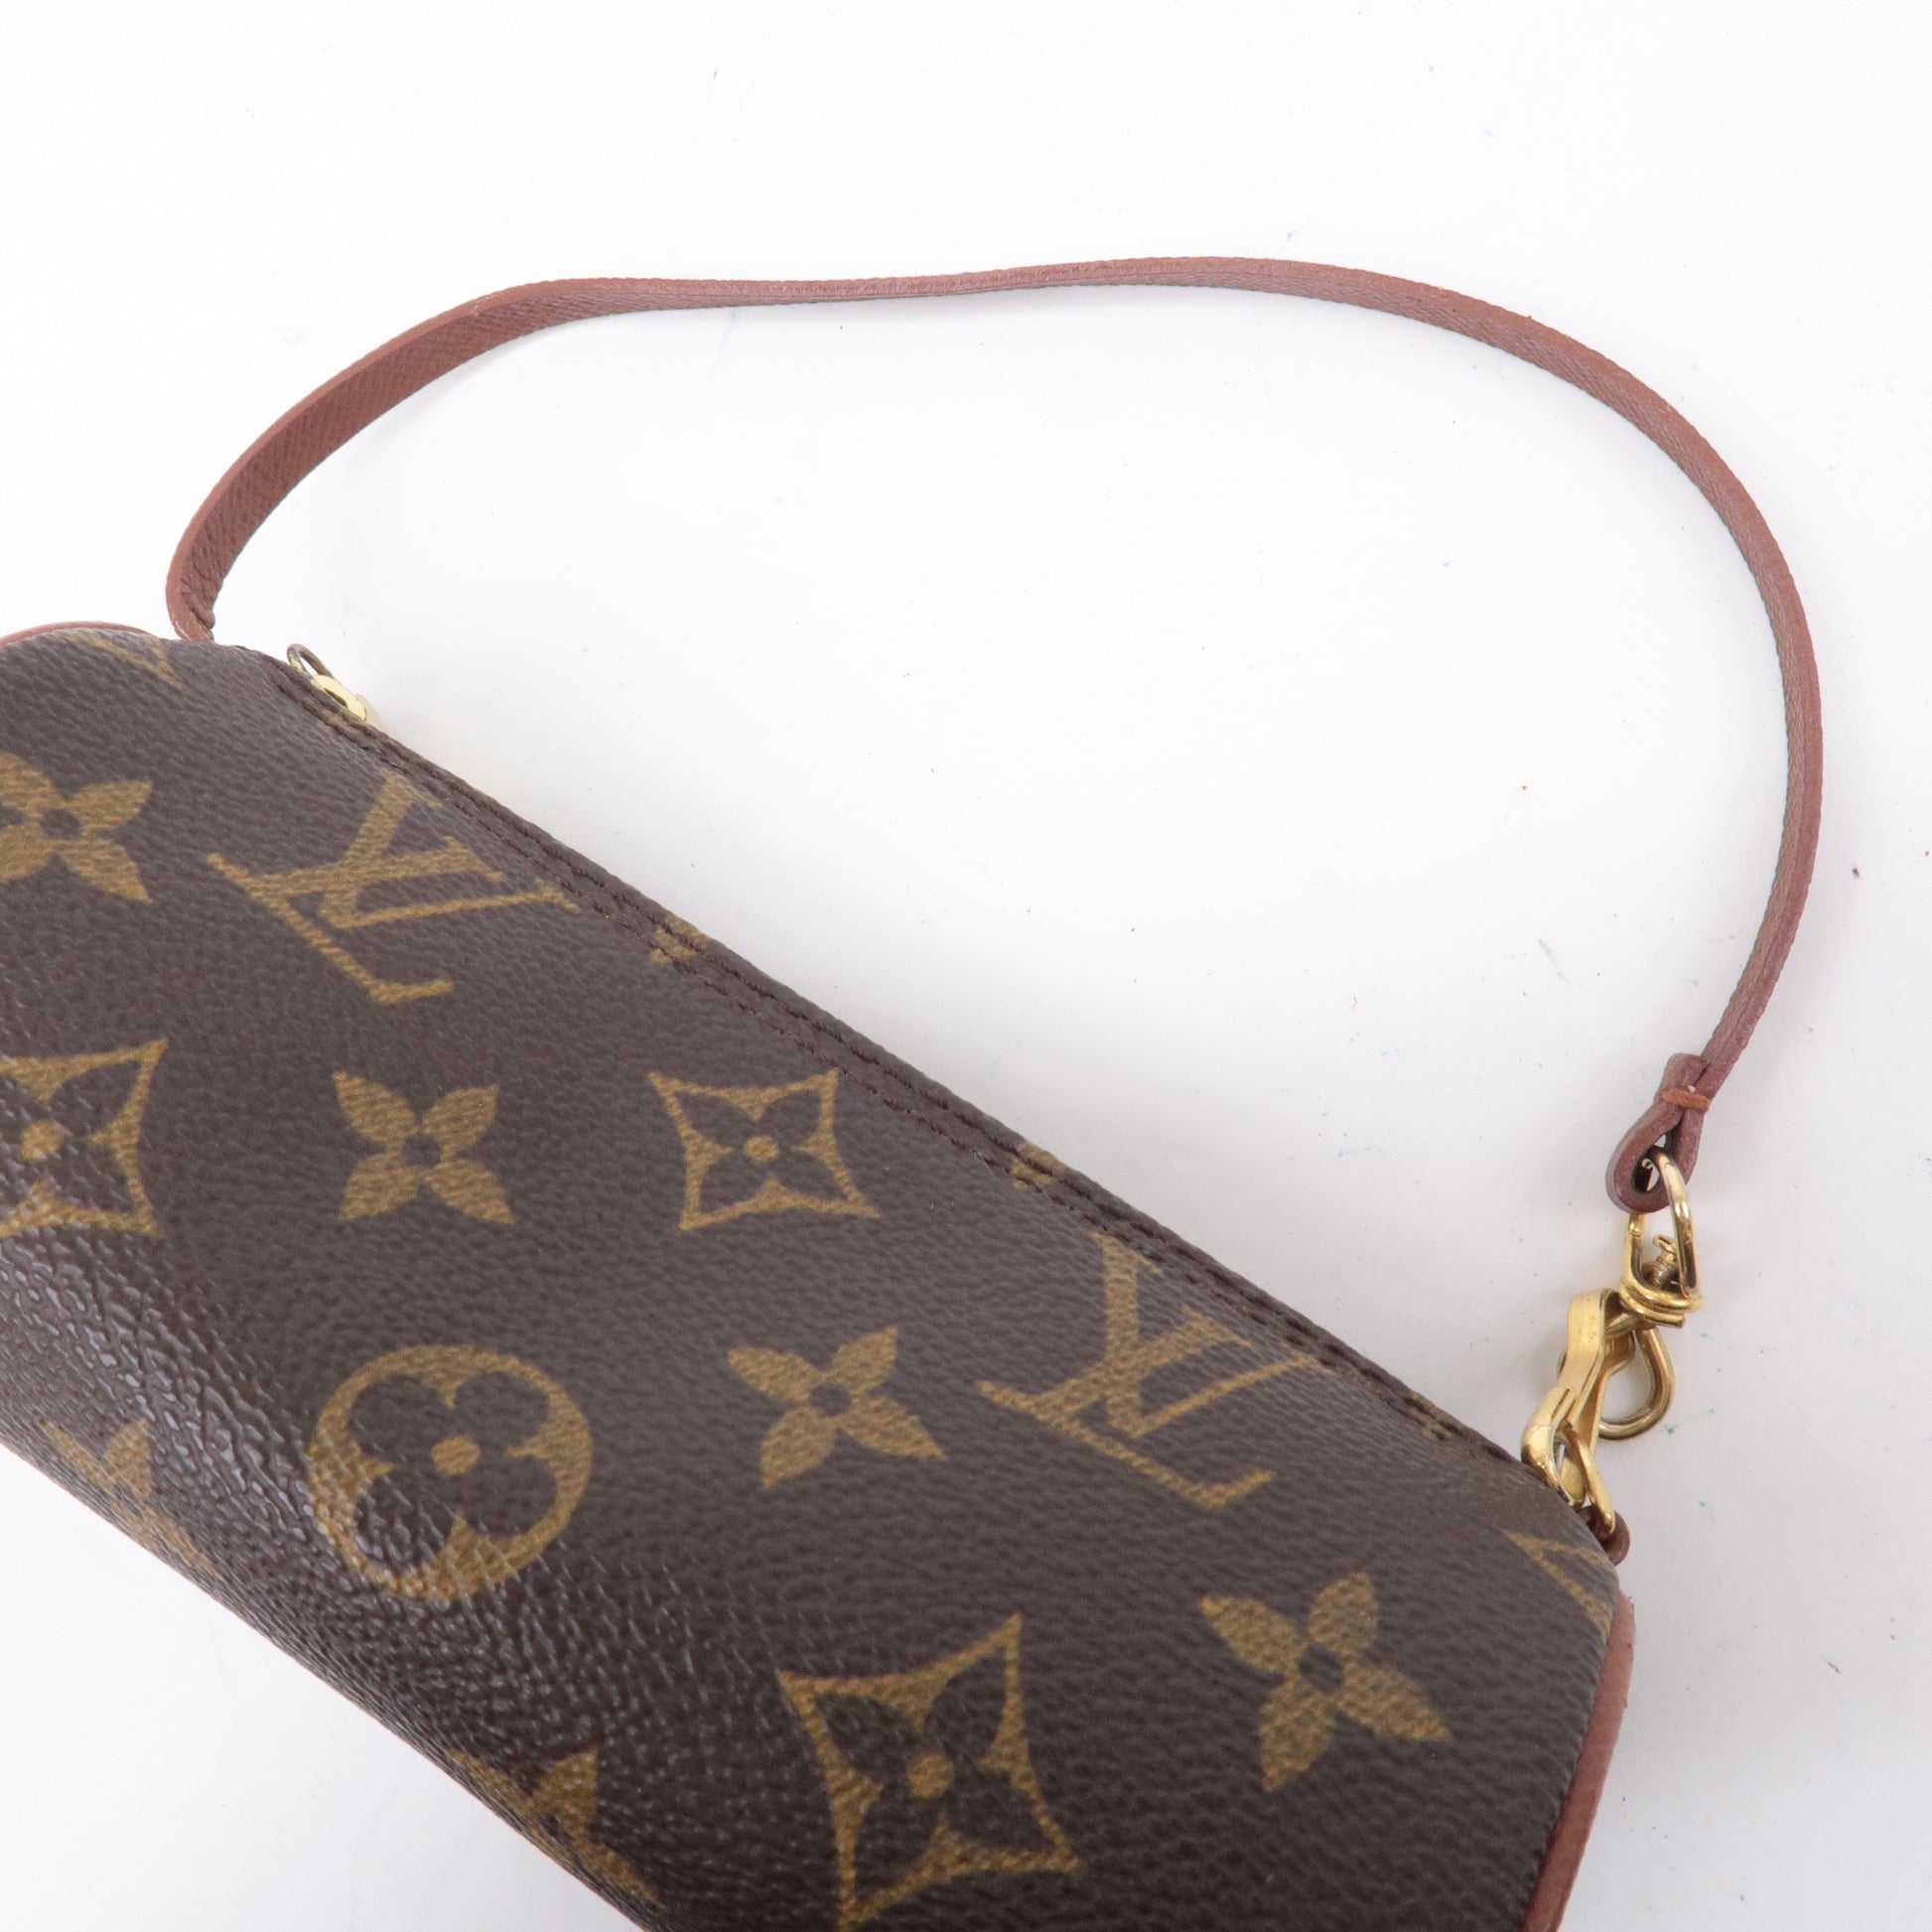 Authentic Louis Vuitton Damier Sauvage Impala Fur Type Leather Bag Handbag  Purse